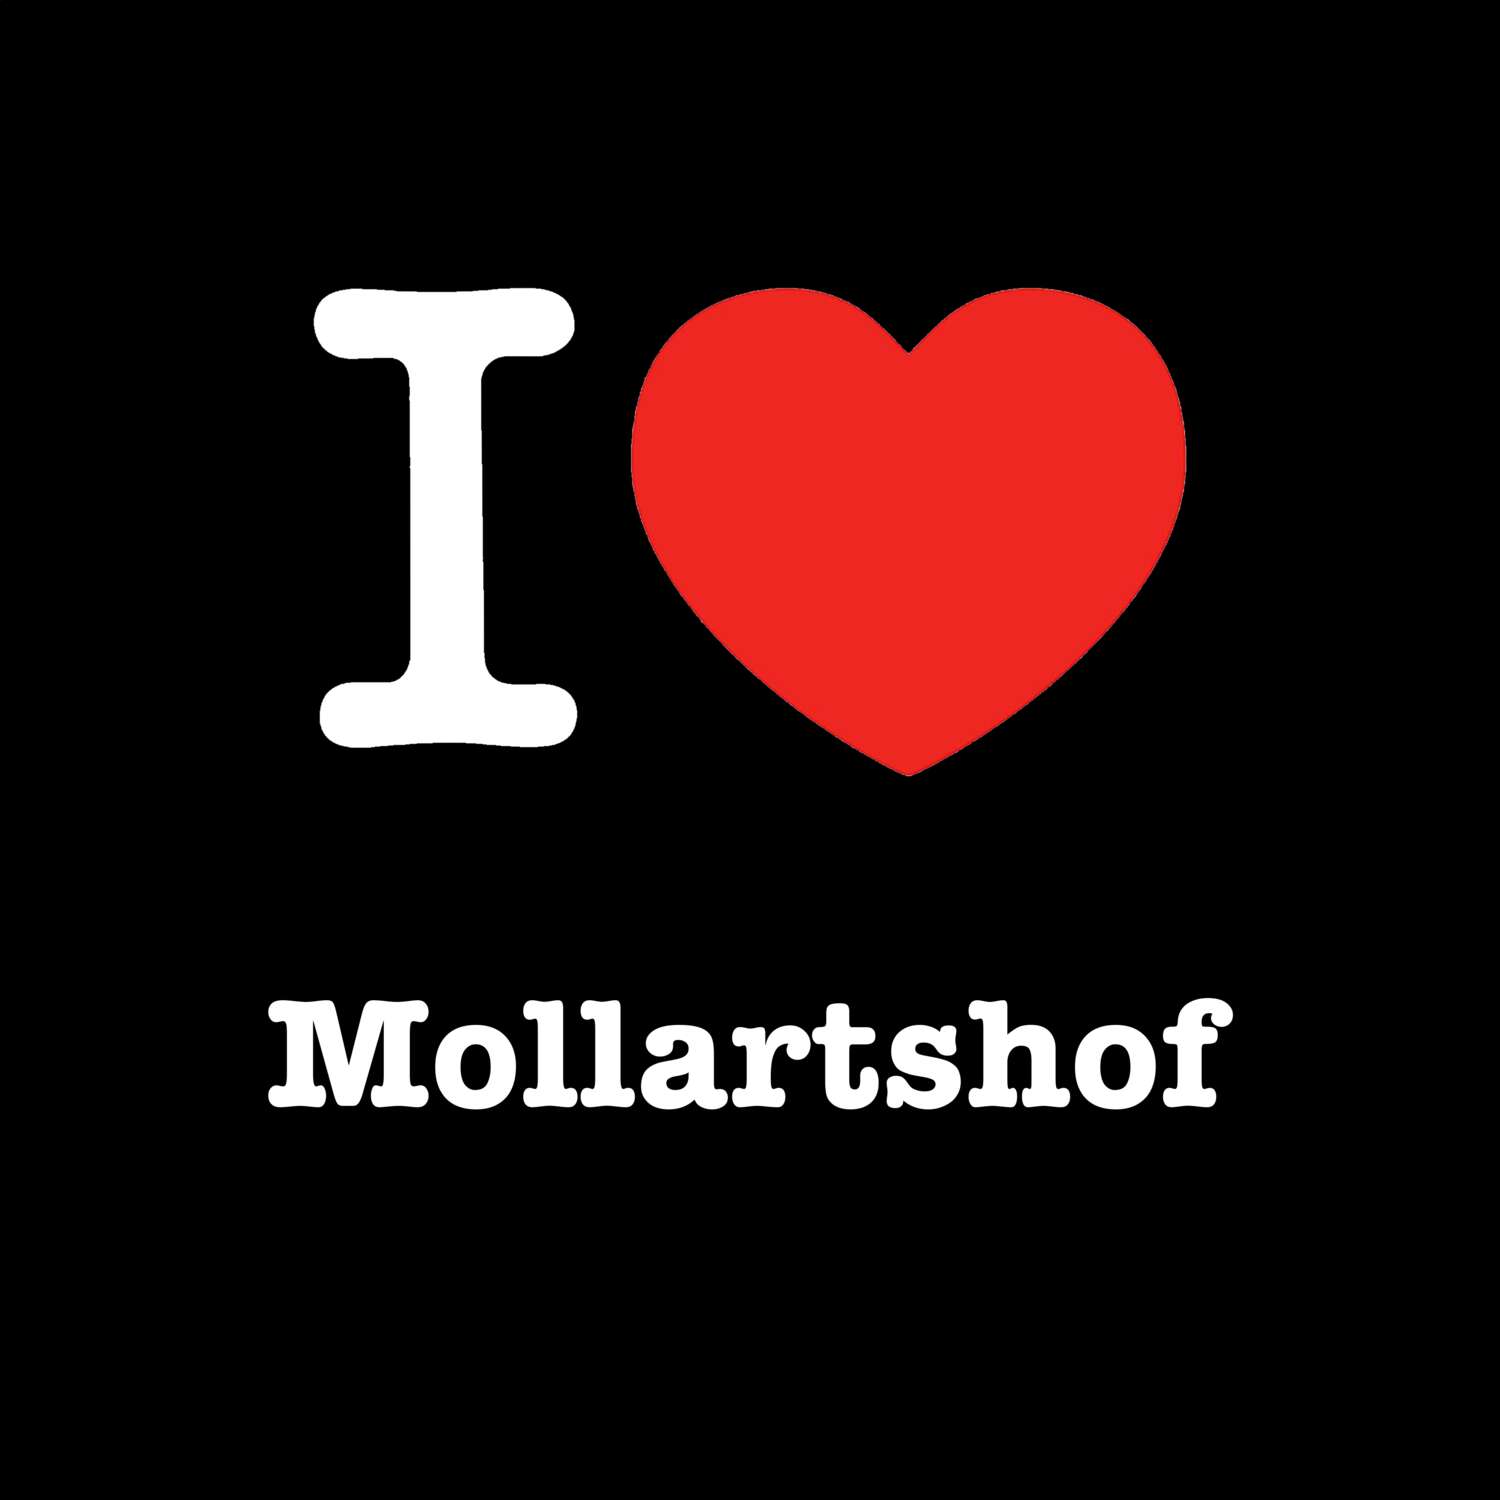 Mollartshof T-Shirt »I love«